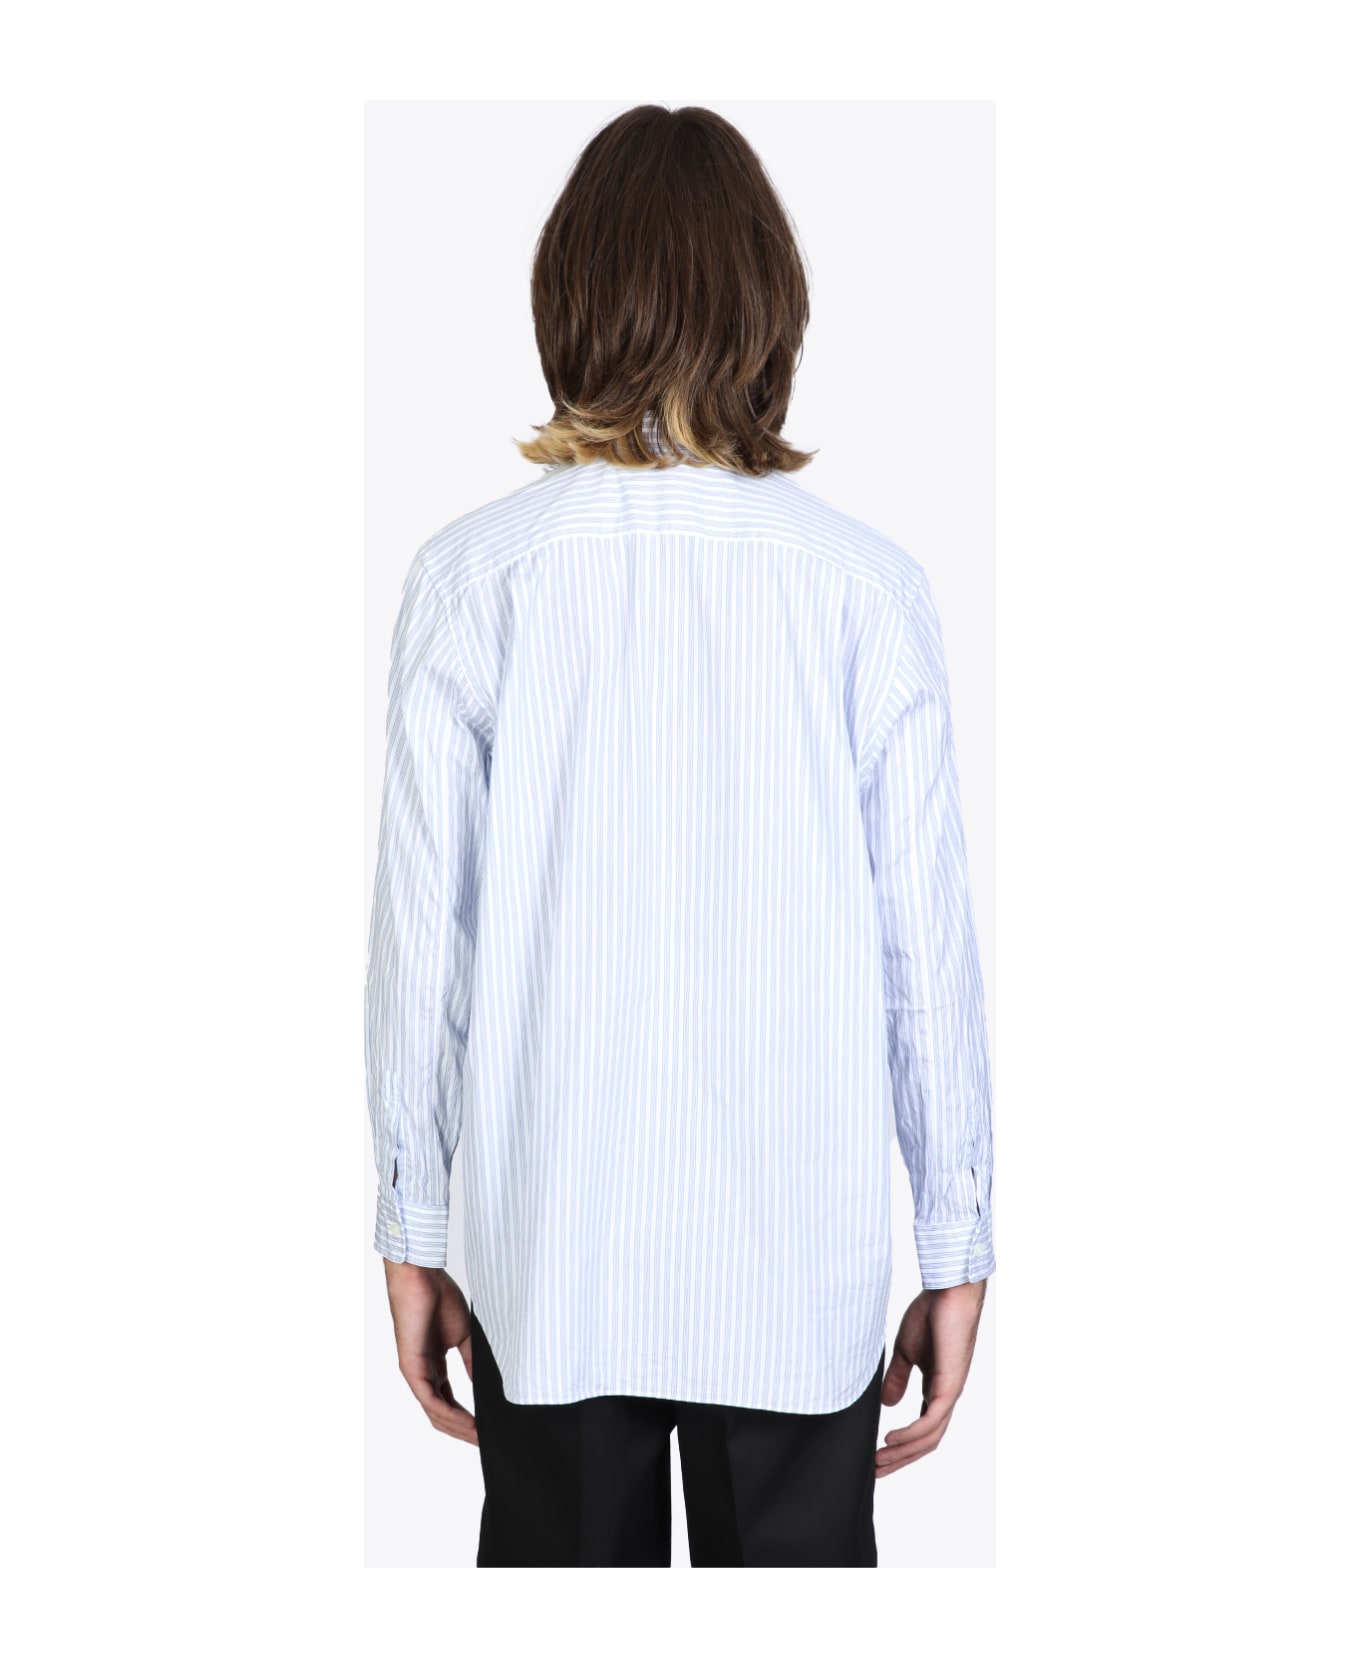 Comme des Garçons Play Mens Shirt Light blue and white striped shirt. - Bianco/celeste